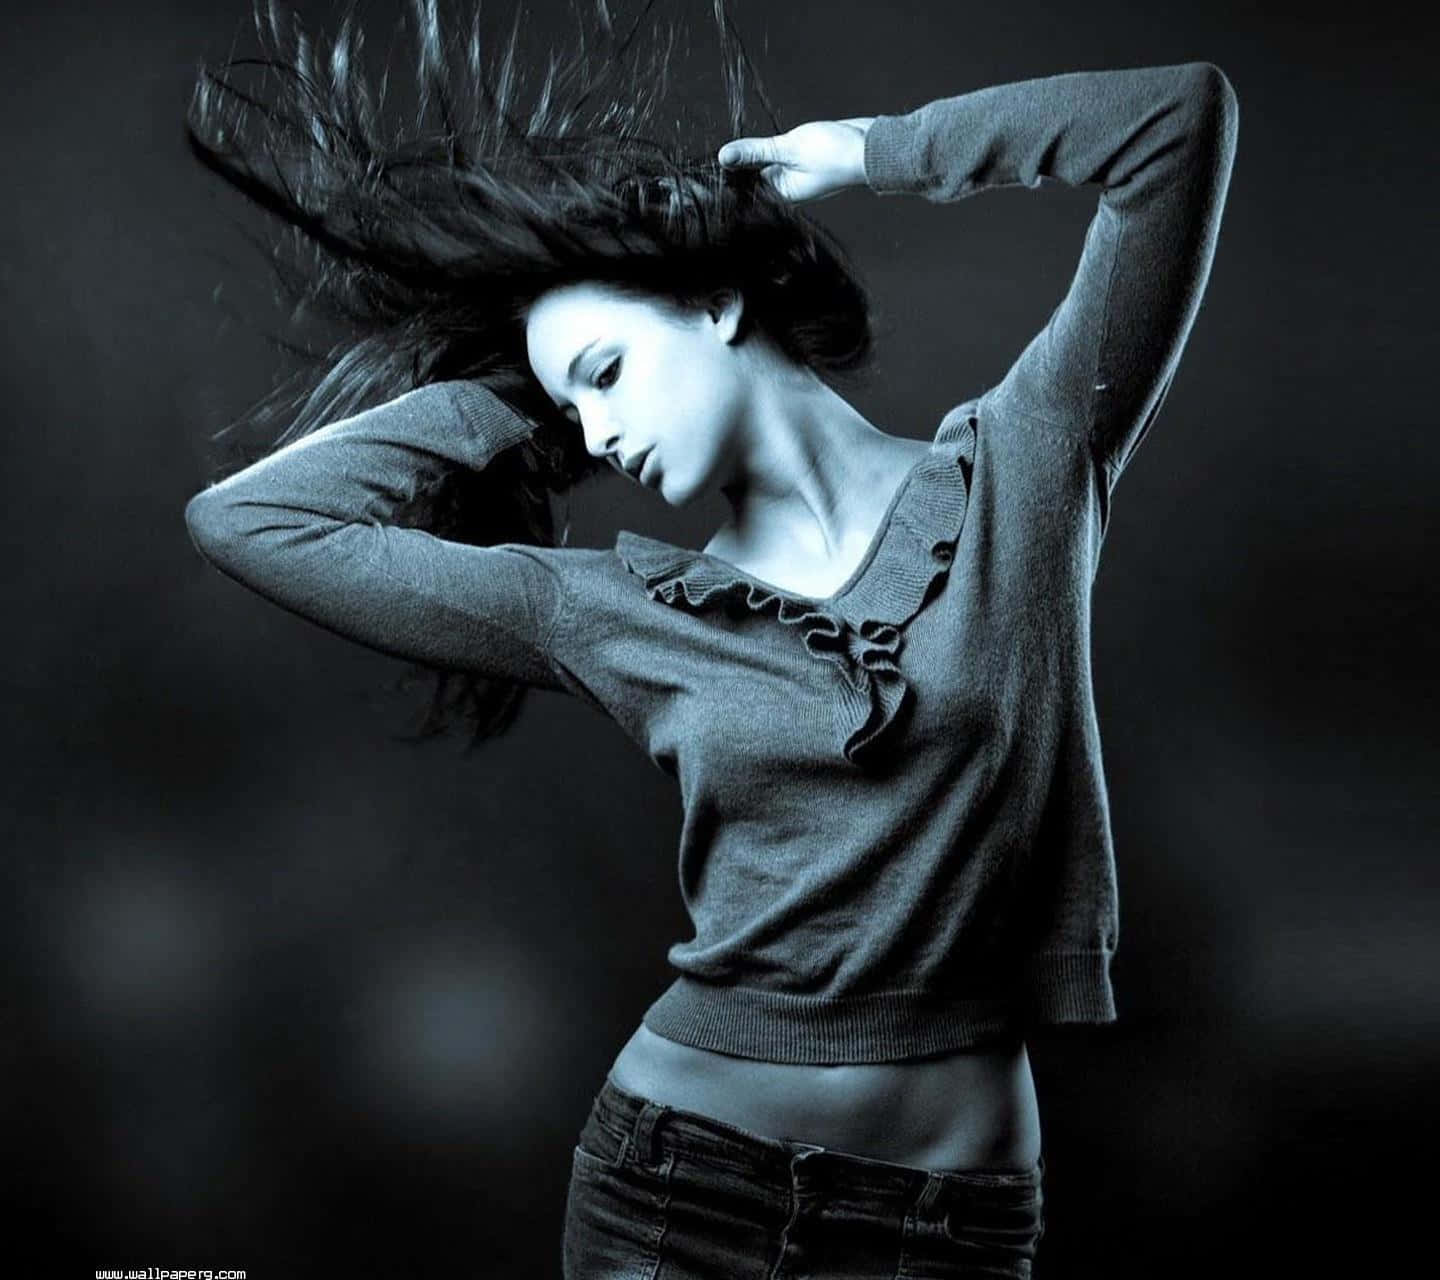 Dansandekvinna Profil I Svart Och Vitt. Wallpaper